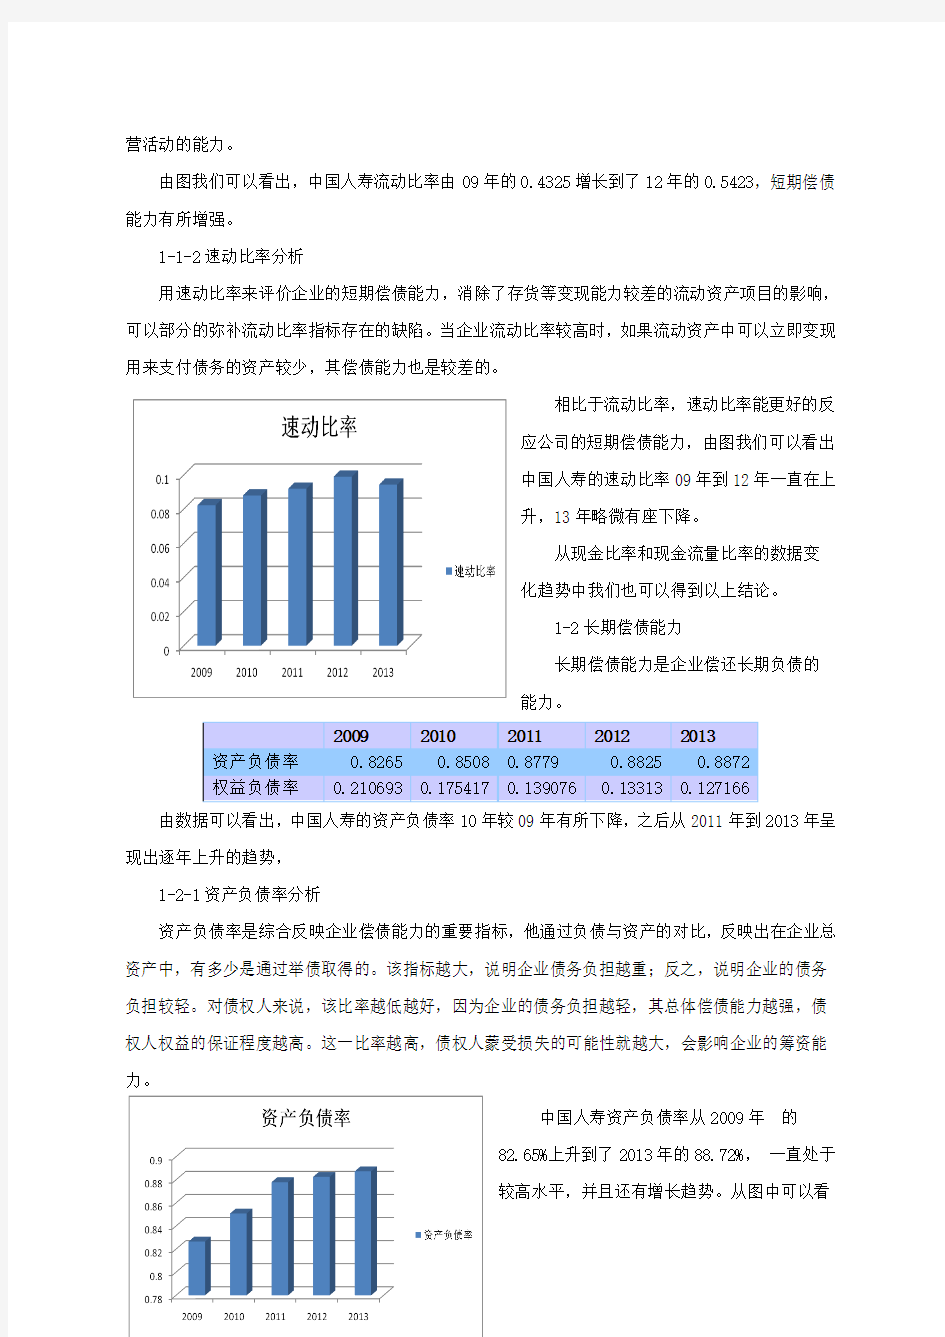 中国人寿 财务报表分析(9-13年)